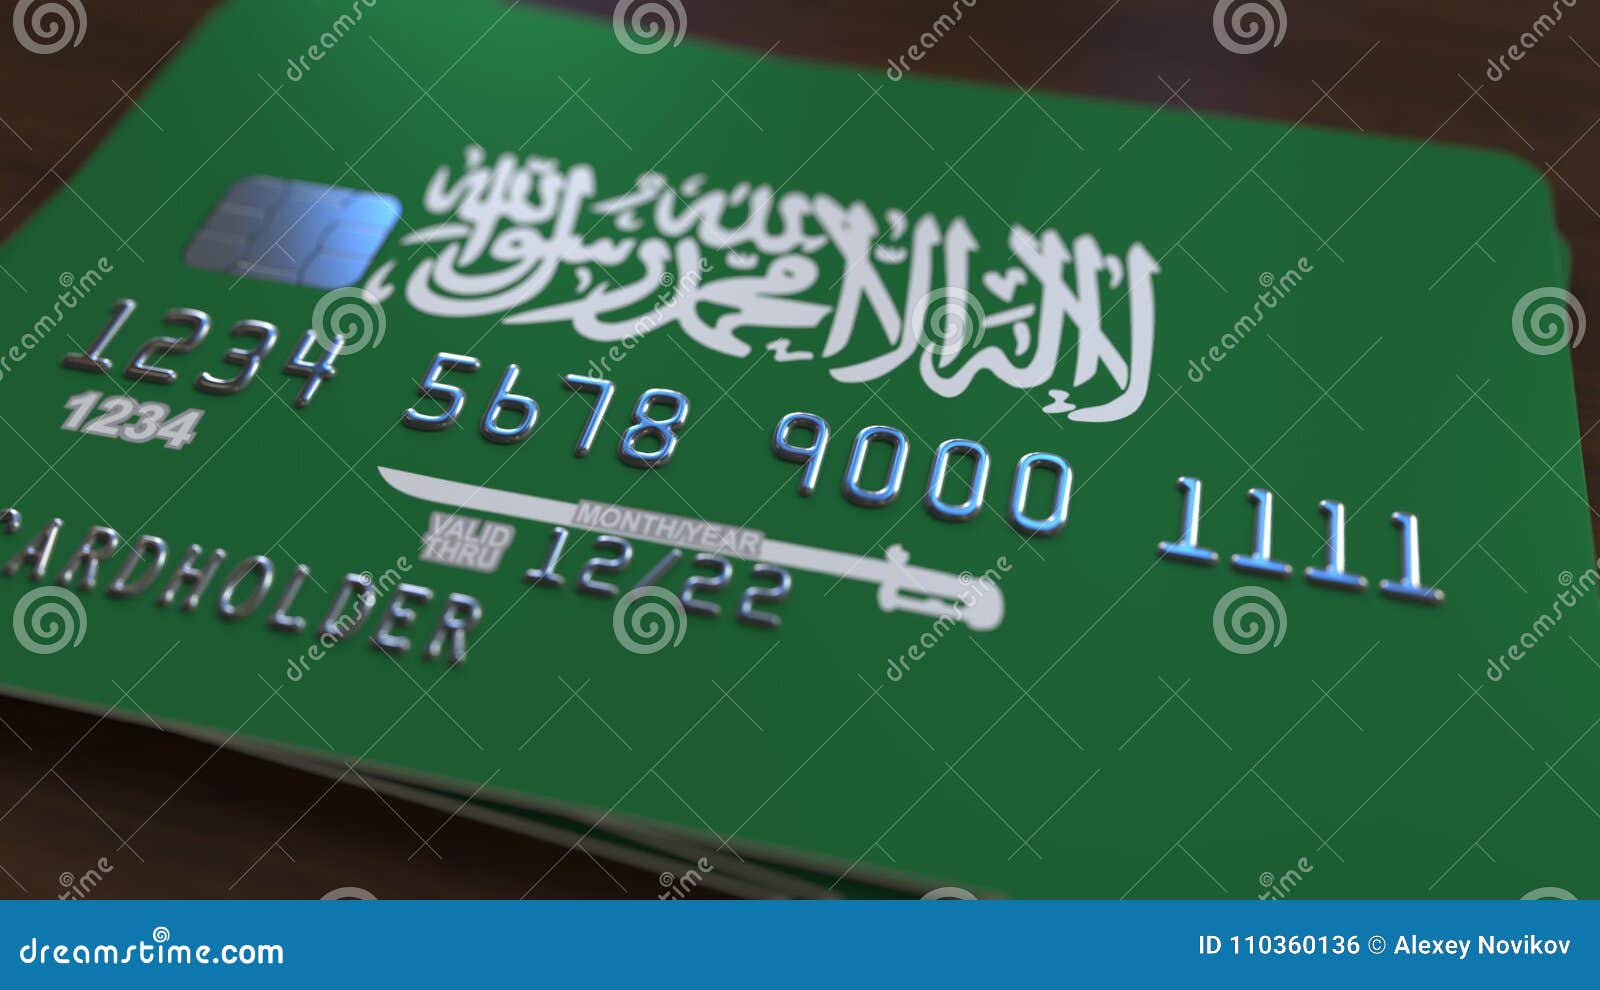 Саудовская аравия перевод. Арабские банковские карты. Исламский банк Саудовская Аравия. Флаг Саудовской Аравии перевод. Что означает флаг Саудовской Аравии.